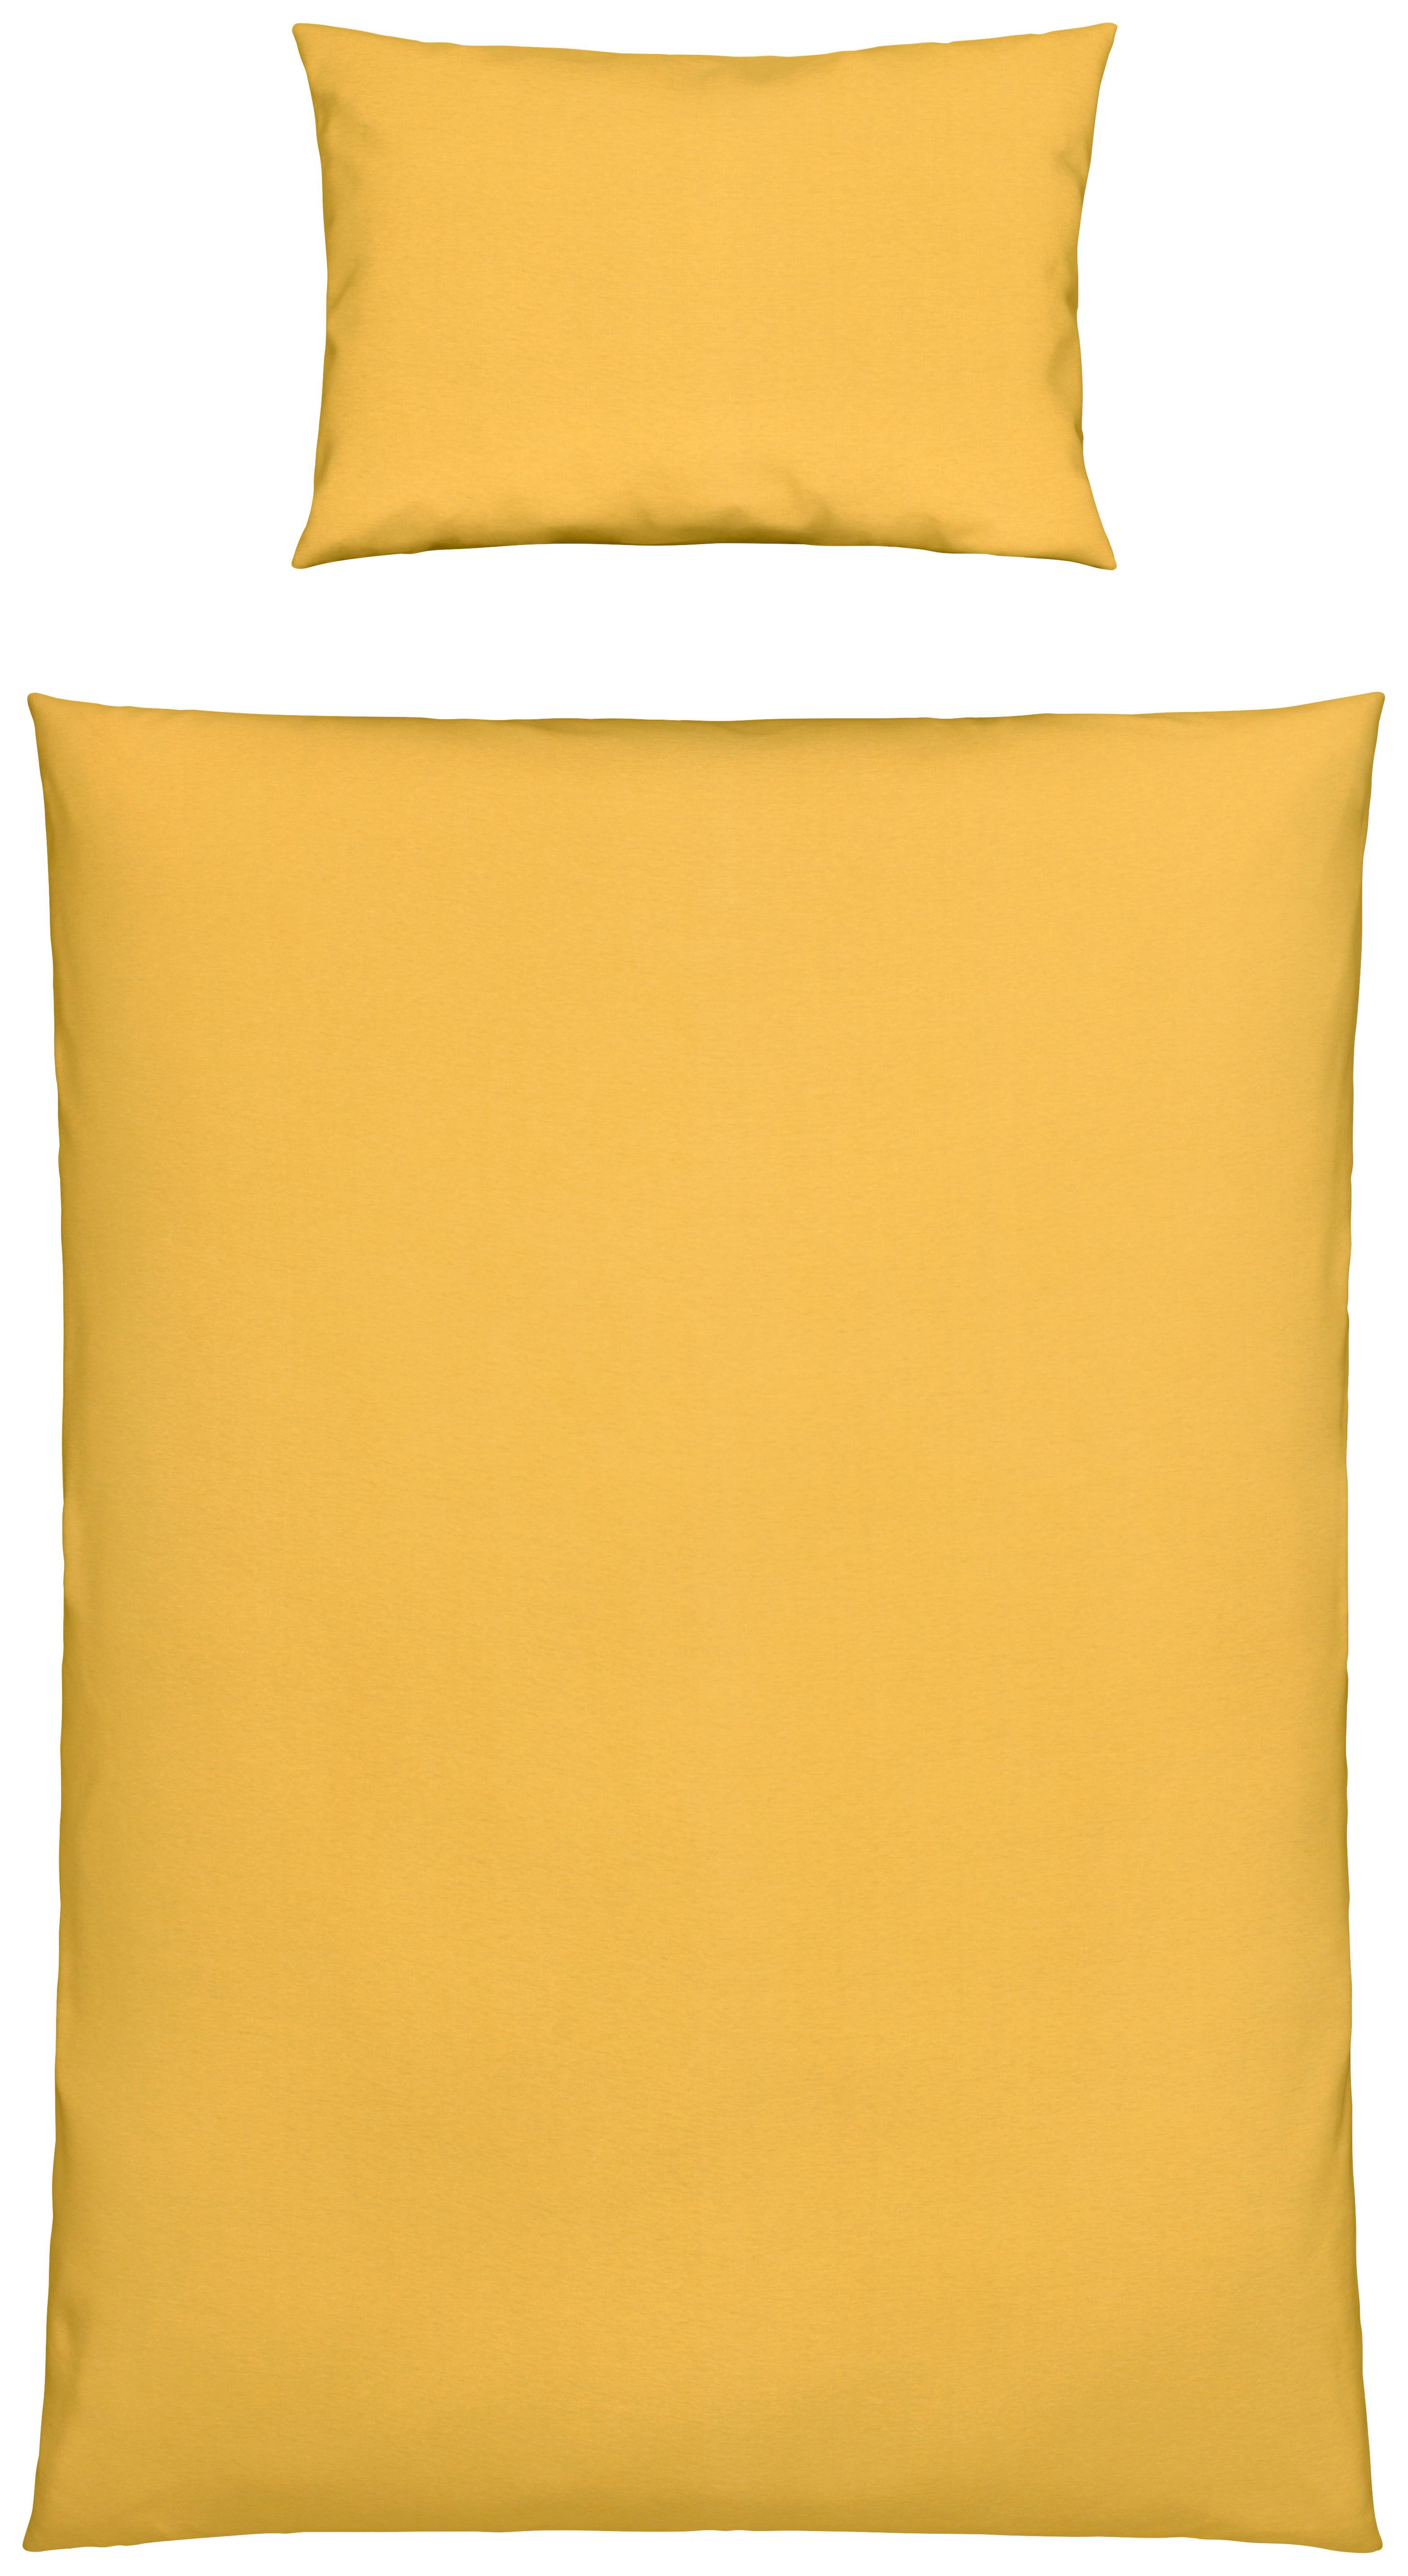 Dětské Povlečení Toni, 100/135cm, Žlutá - žlutá, Moderní, textil (100/135cm) - Modern Living